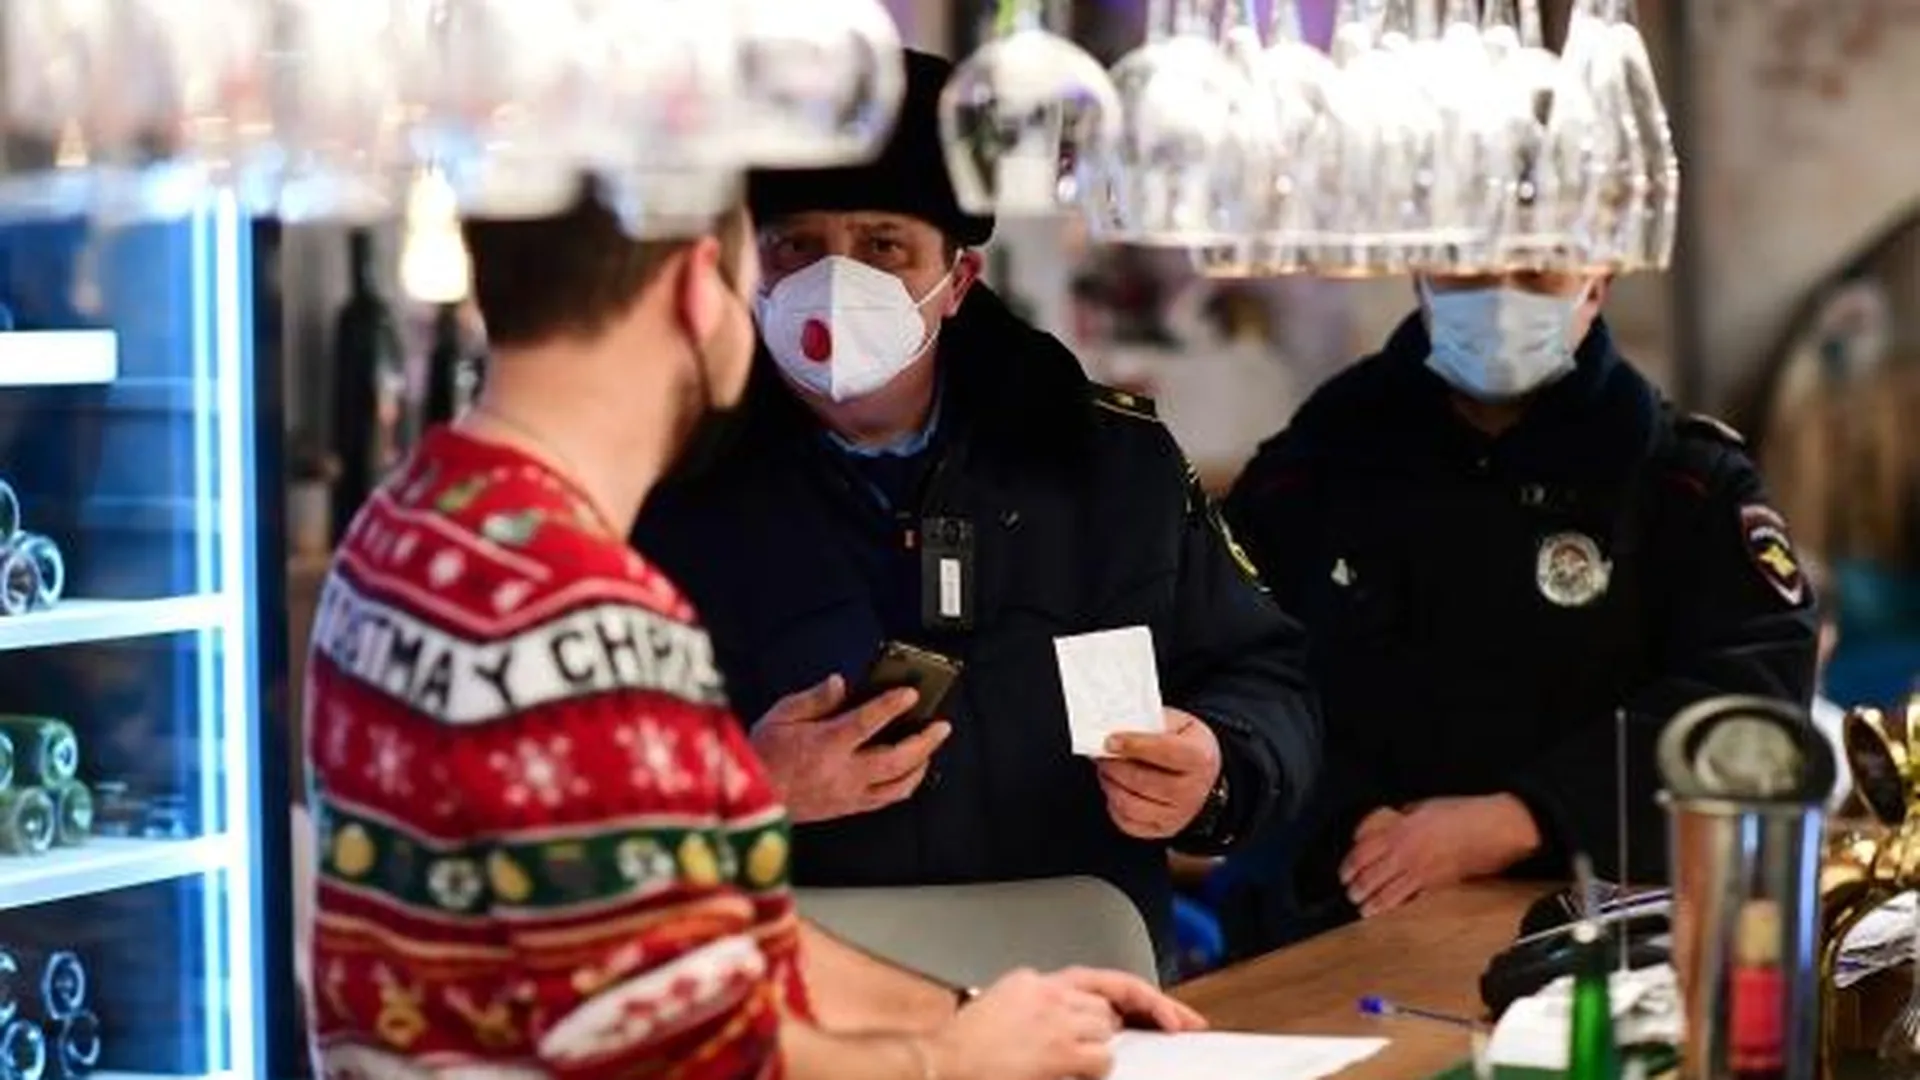 Сотрудники правоохранительных органов во время рейда на предмет выполнения санитарно-эпидемиологических требований в одном из заведений общепита в Москве